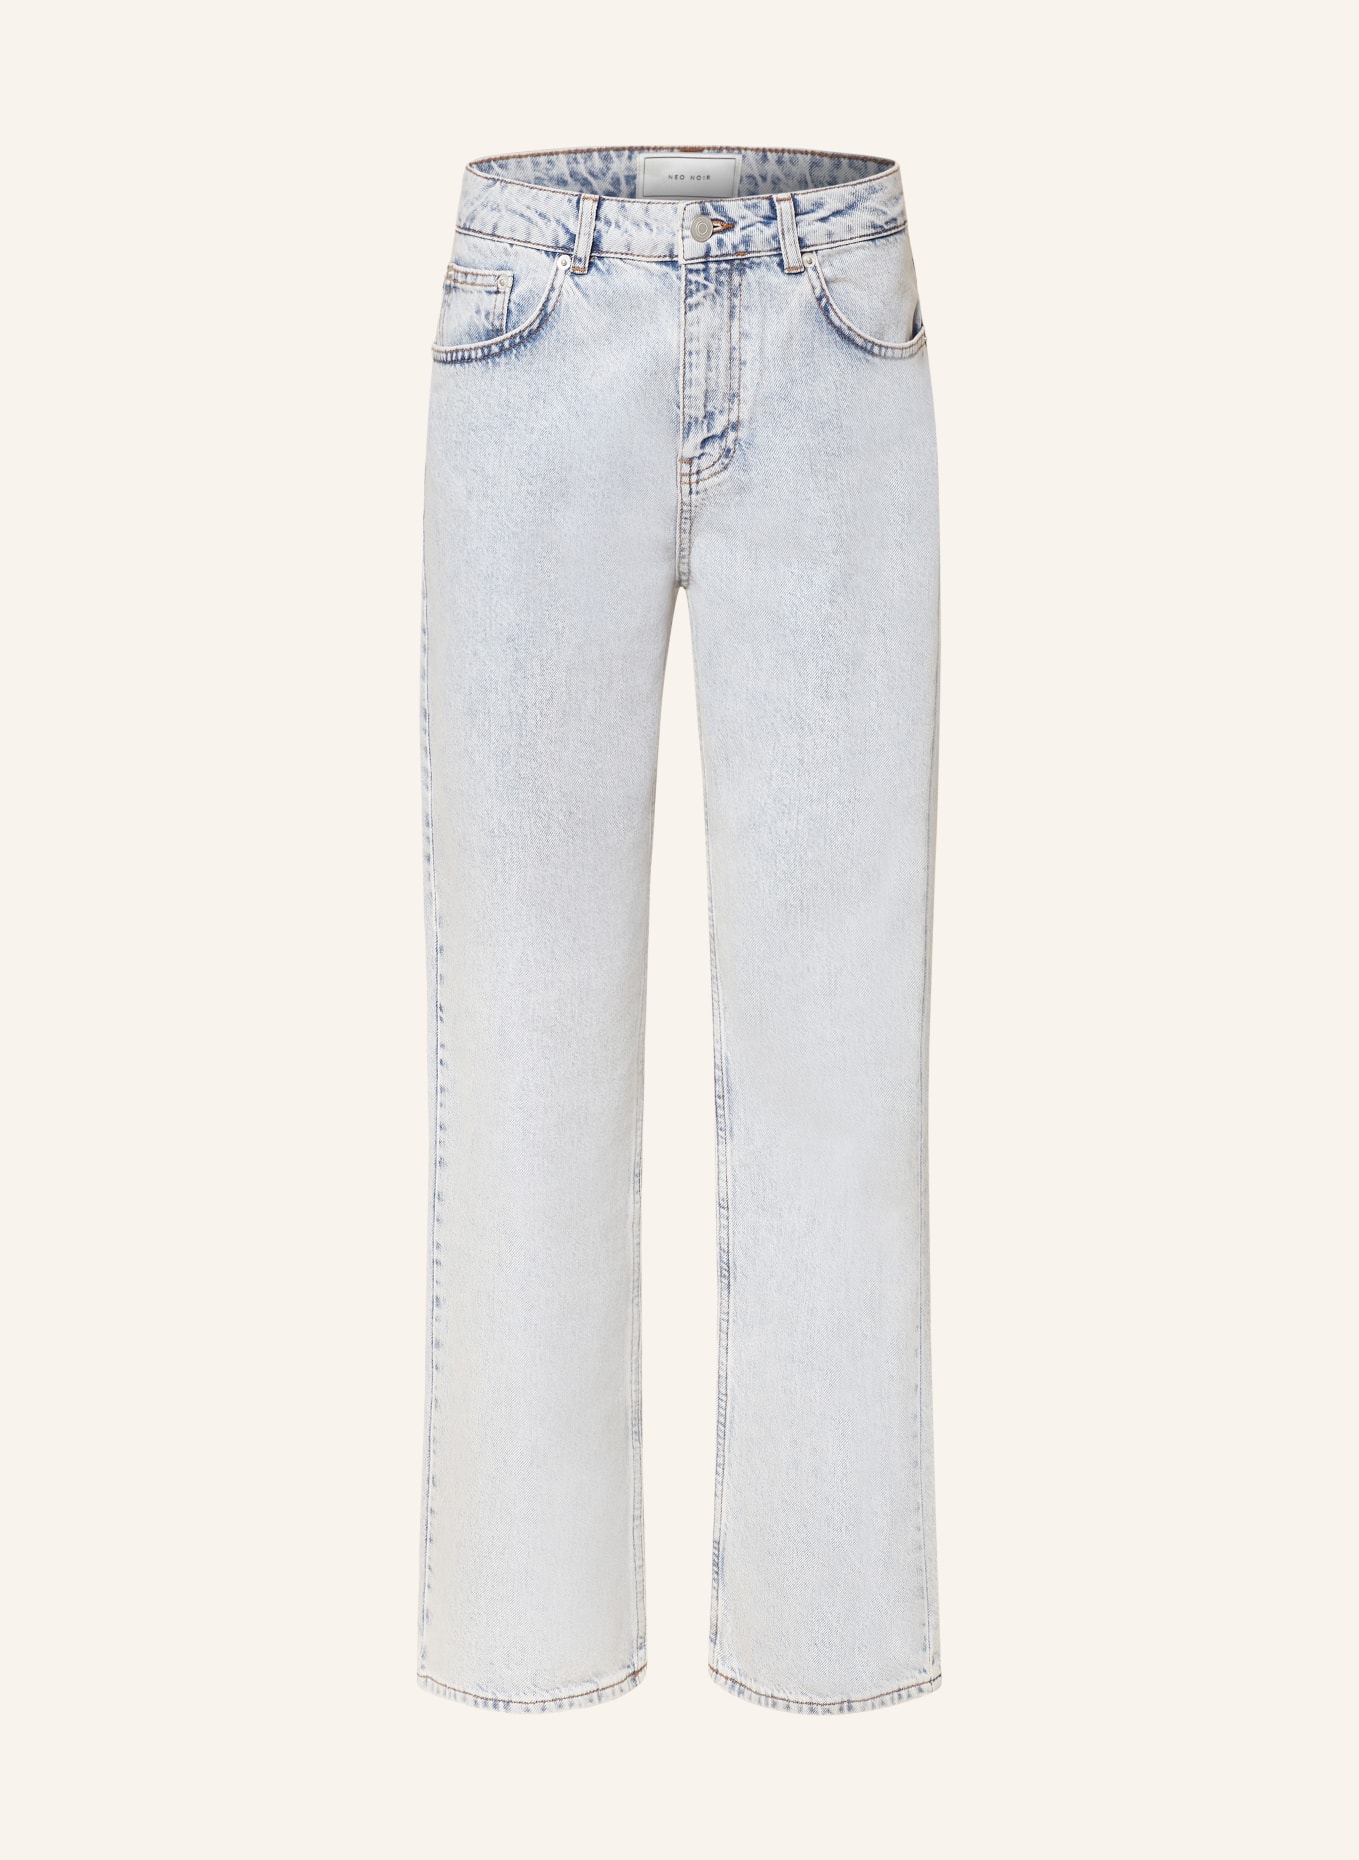 NEO NOIR Jeans SIMONA, Farbe: 407 Smoke Blue (Bild 1)